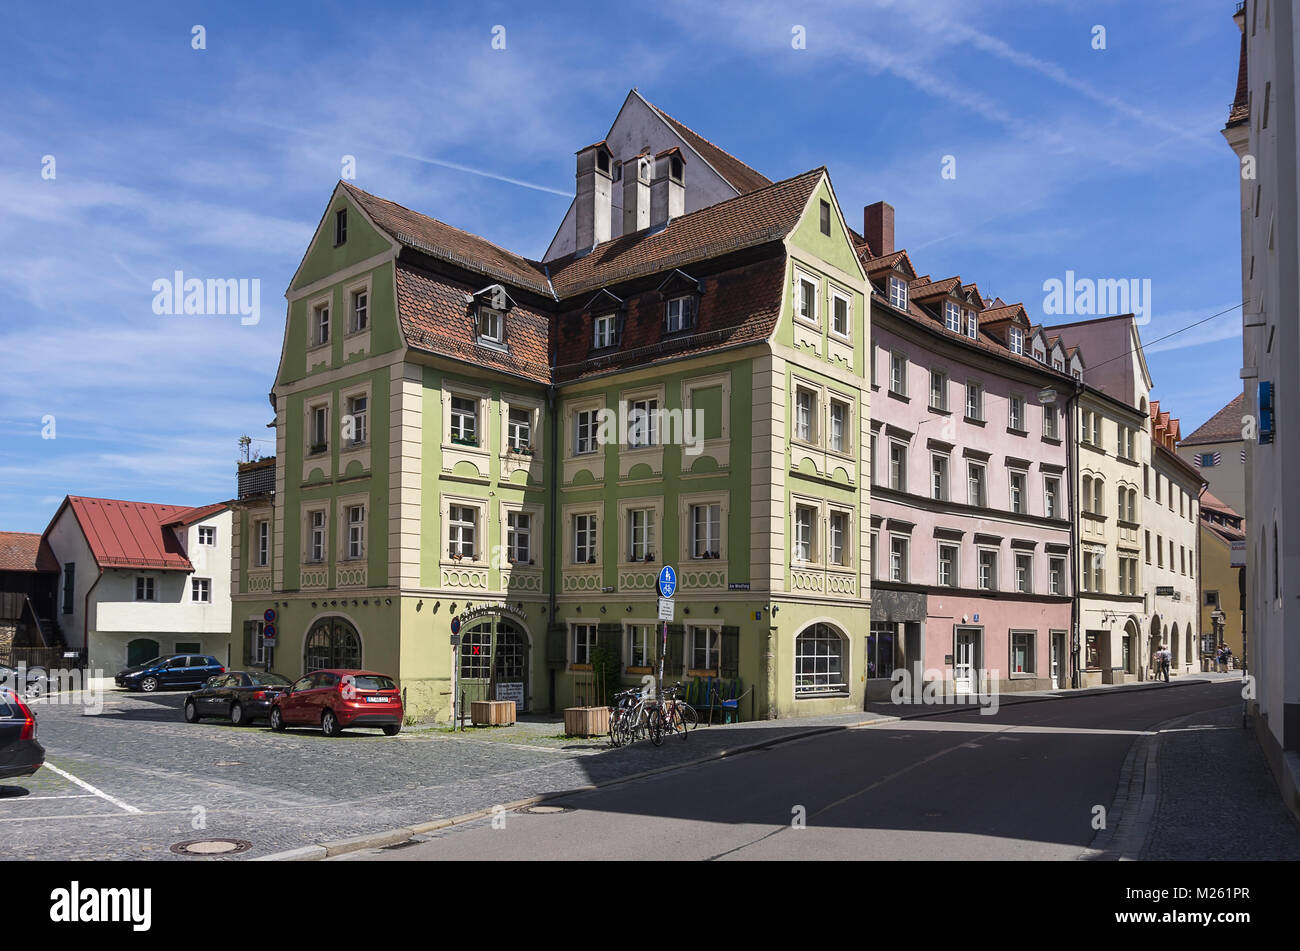 Regensburg, Deutschland - 22. Mai 2016: Historischen Wohnarchitektur auf Goldene Bären Straße in Regensburg, Bayern, Deutschland. Stockfoto